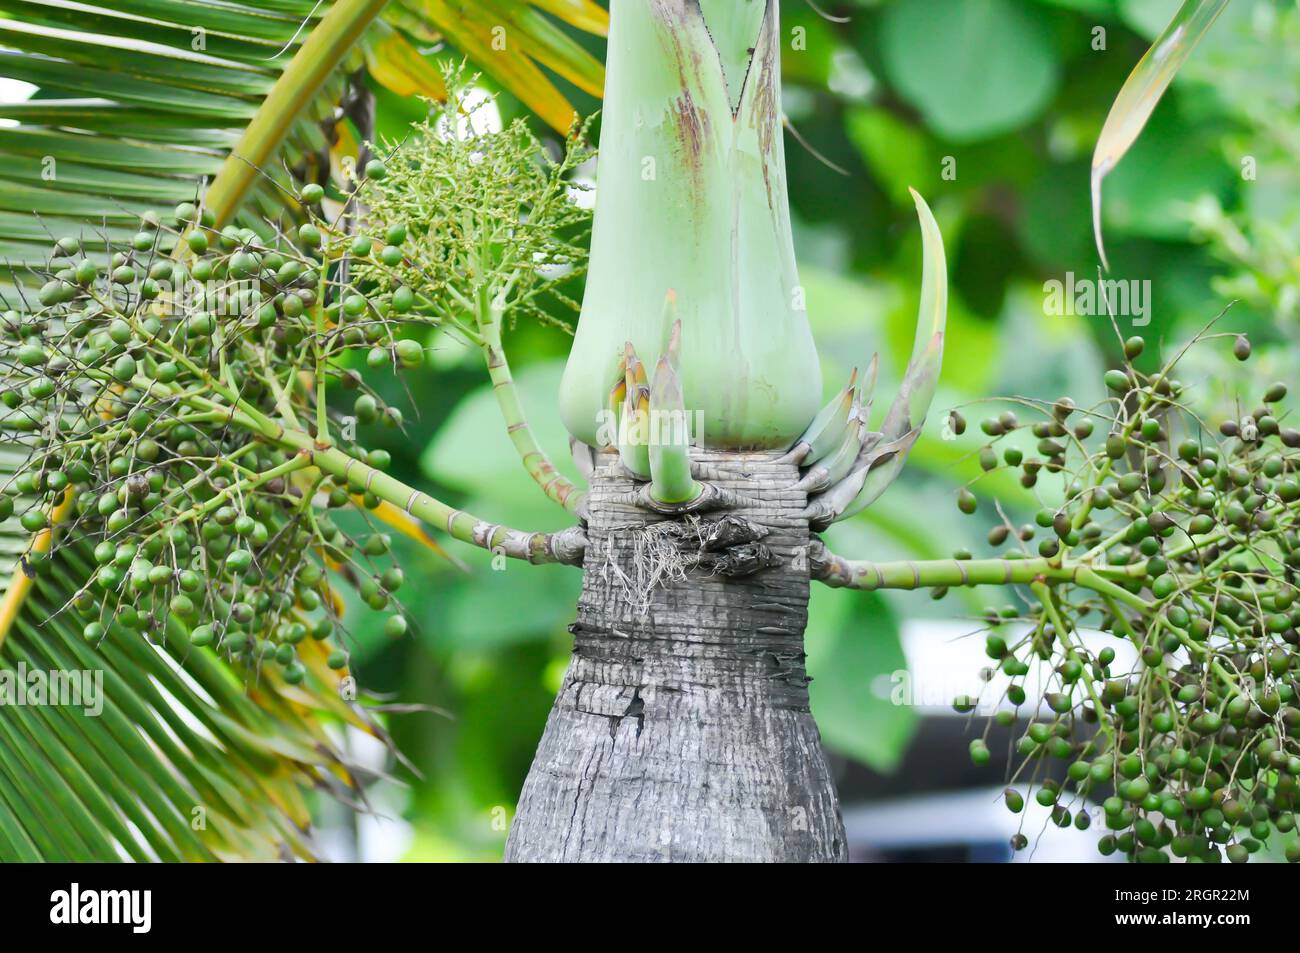 Roystonea regia ,Cuban royal palm or ARECACEAE or palm seed Stock Photo